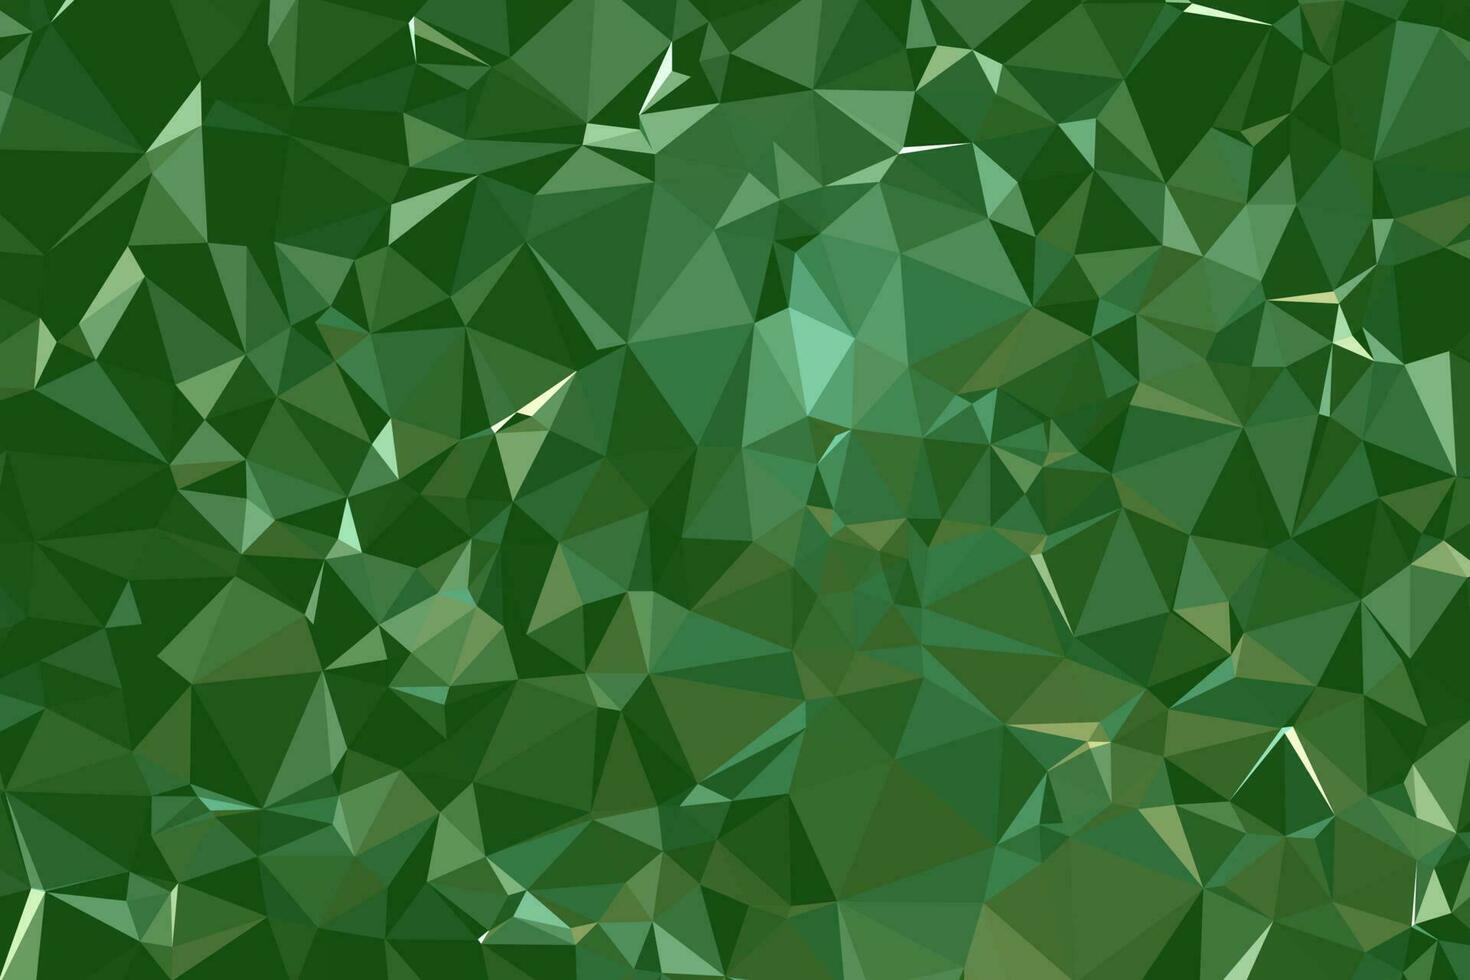 molécula de fundo poligonal geométrico verde escuro abstrato e comunicação. conceito da ciência, química, biologia, medicina, tecnologia. vetor